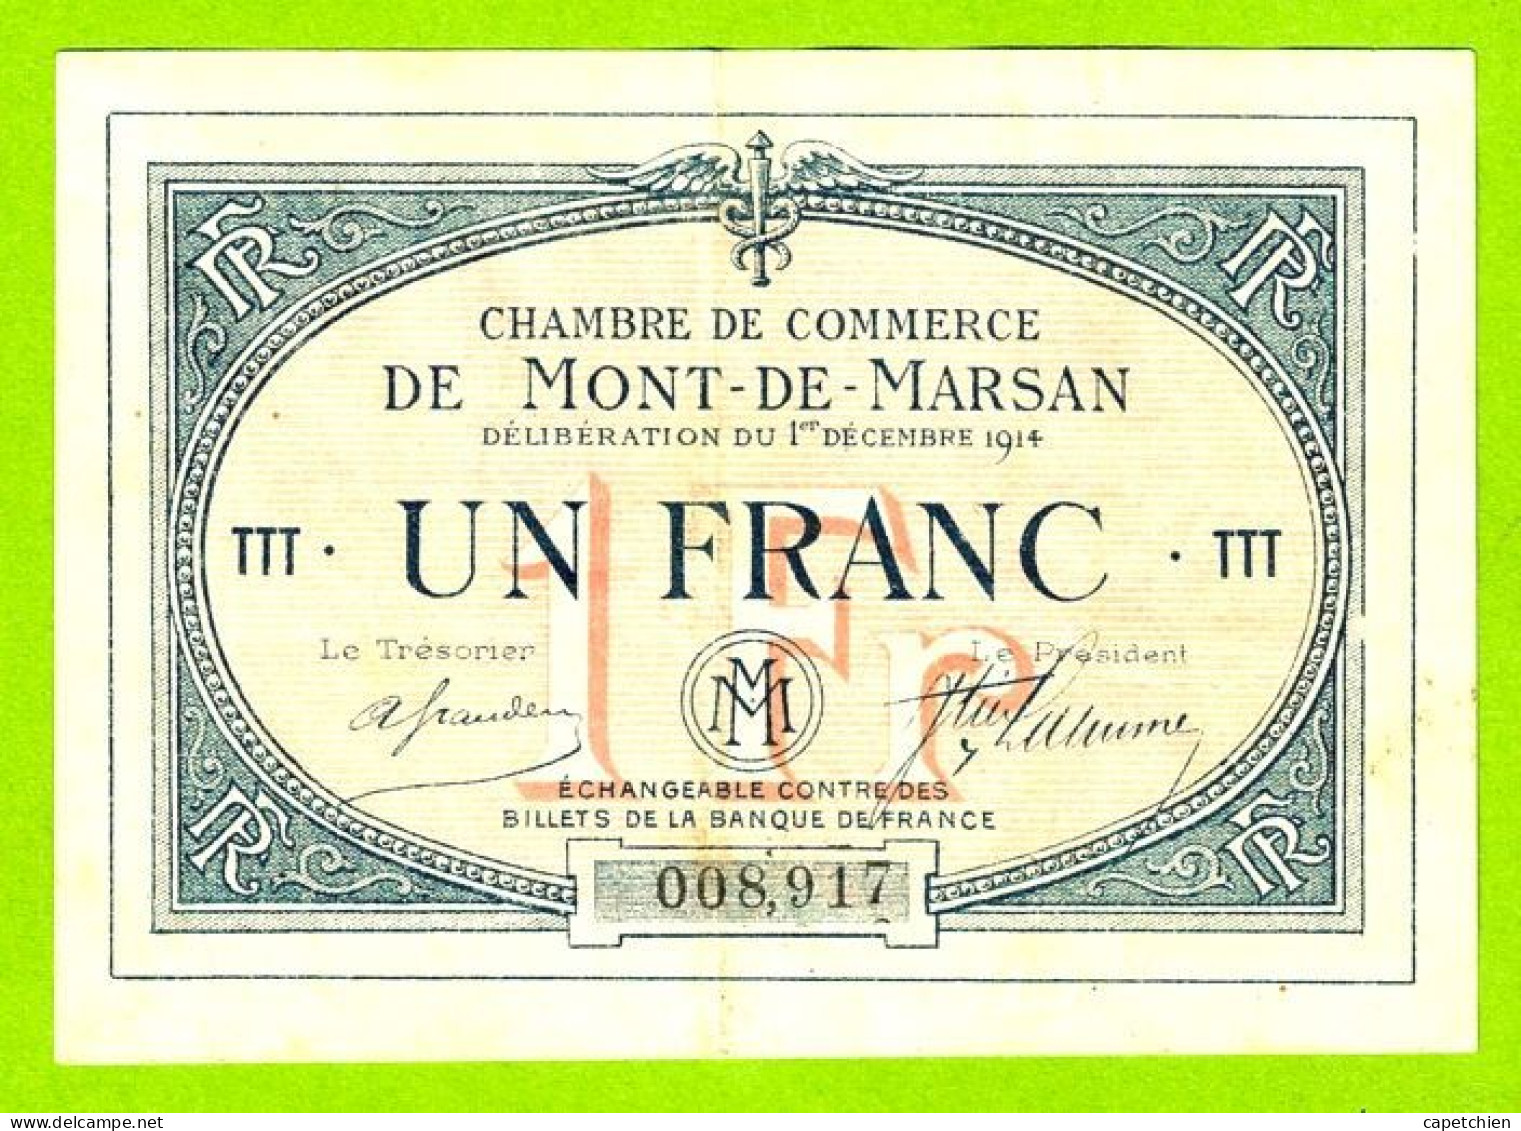 FRANCE / CHAMBRE De COMMERCE / MONT DE MARSAN / 1 FRANC / 1er DECEMBRE 1914 / 008917 / SERIE Ttt - Chambre De Commerce